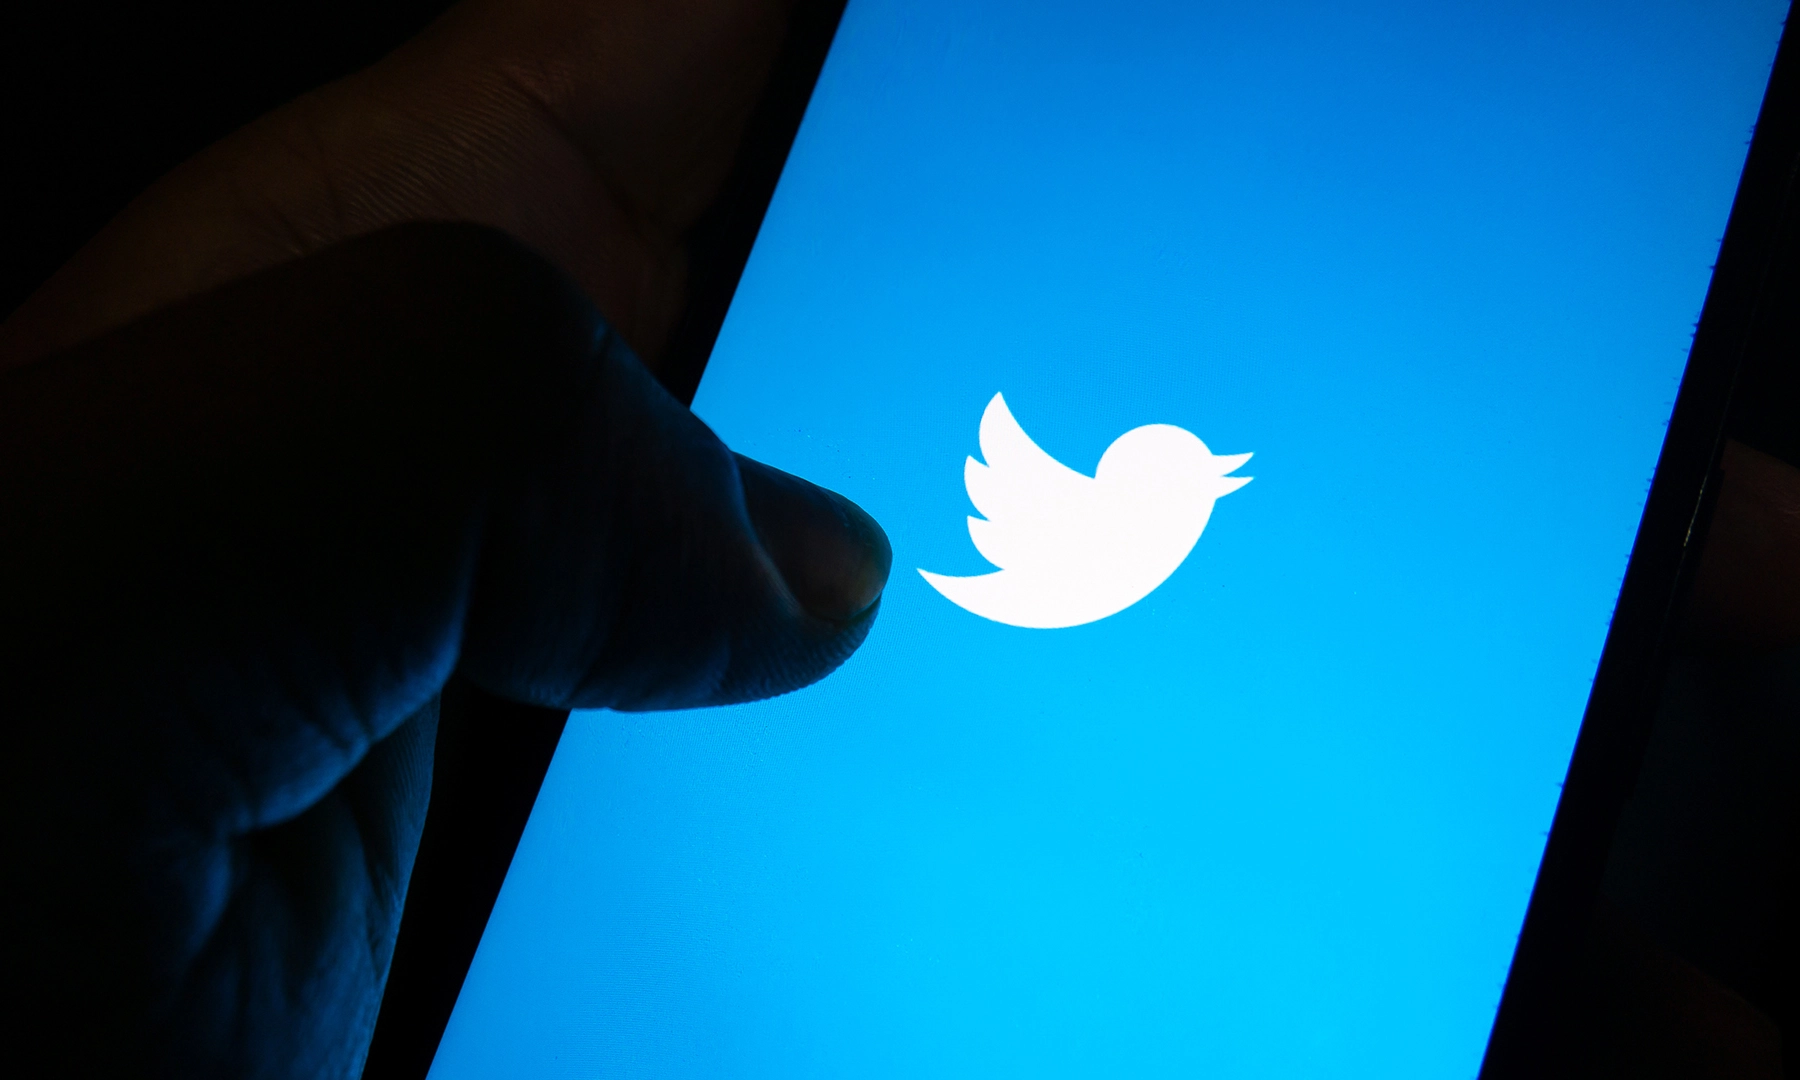 تويتر تنافس لينكدإن وتطور ميزة لربط الباحثين عن وظائف وأصحاب الشركات